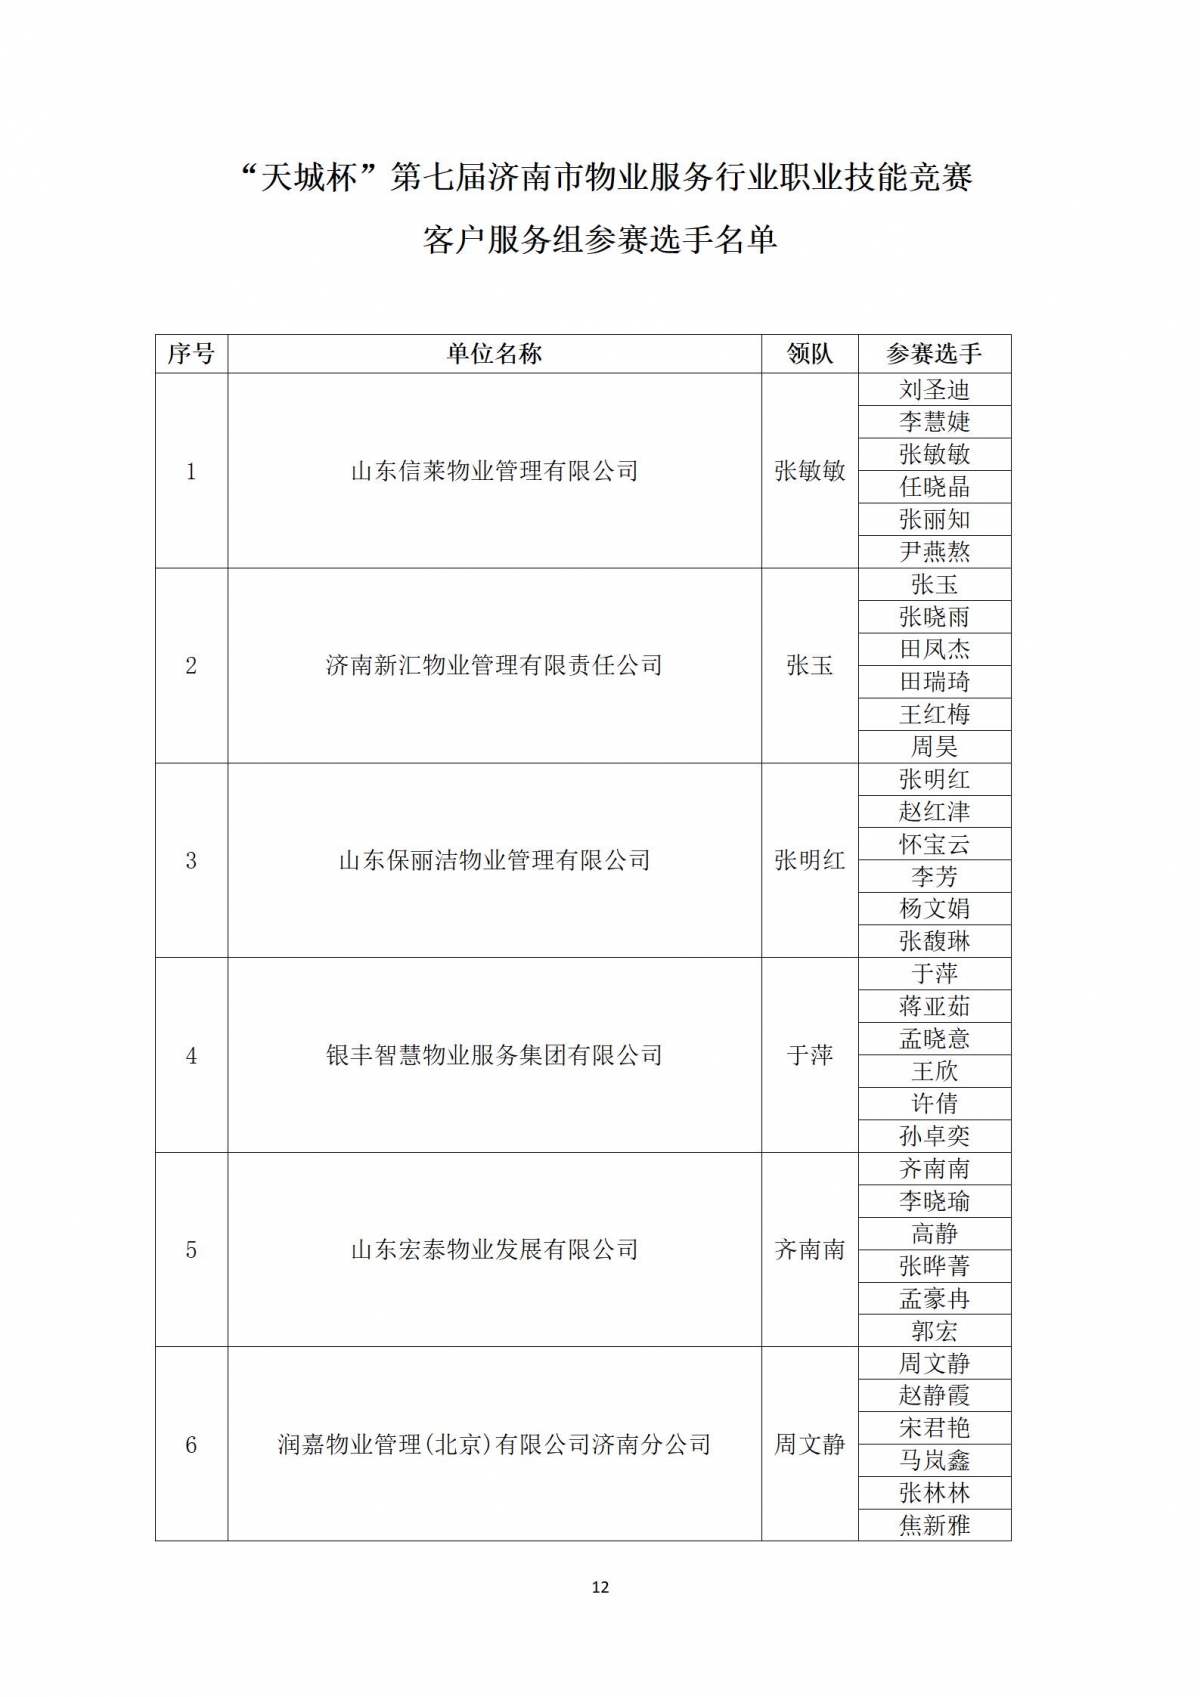 关于“天城杯”第七届济南市物业服务行业职业技能竞赛选手名单的公示_12